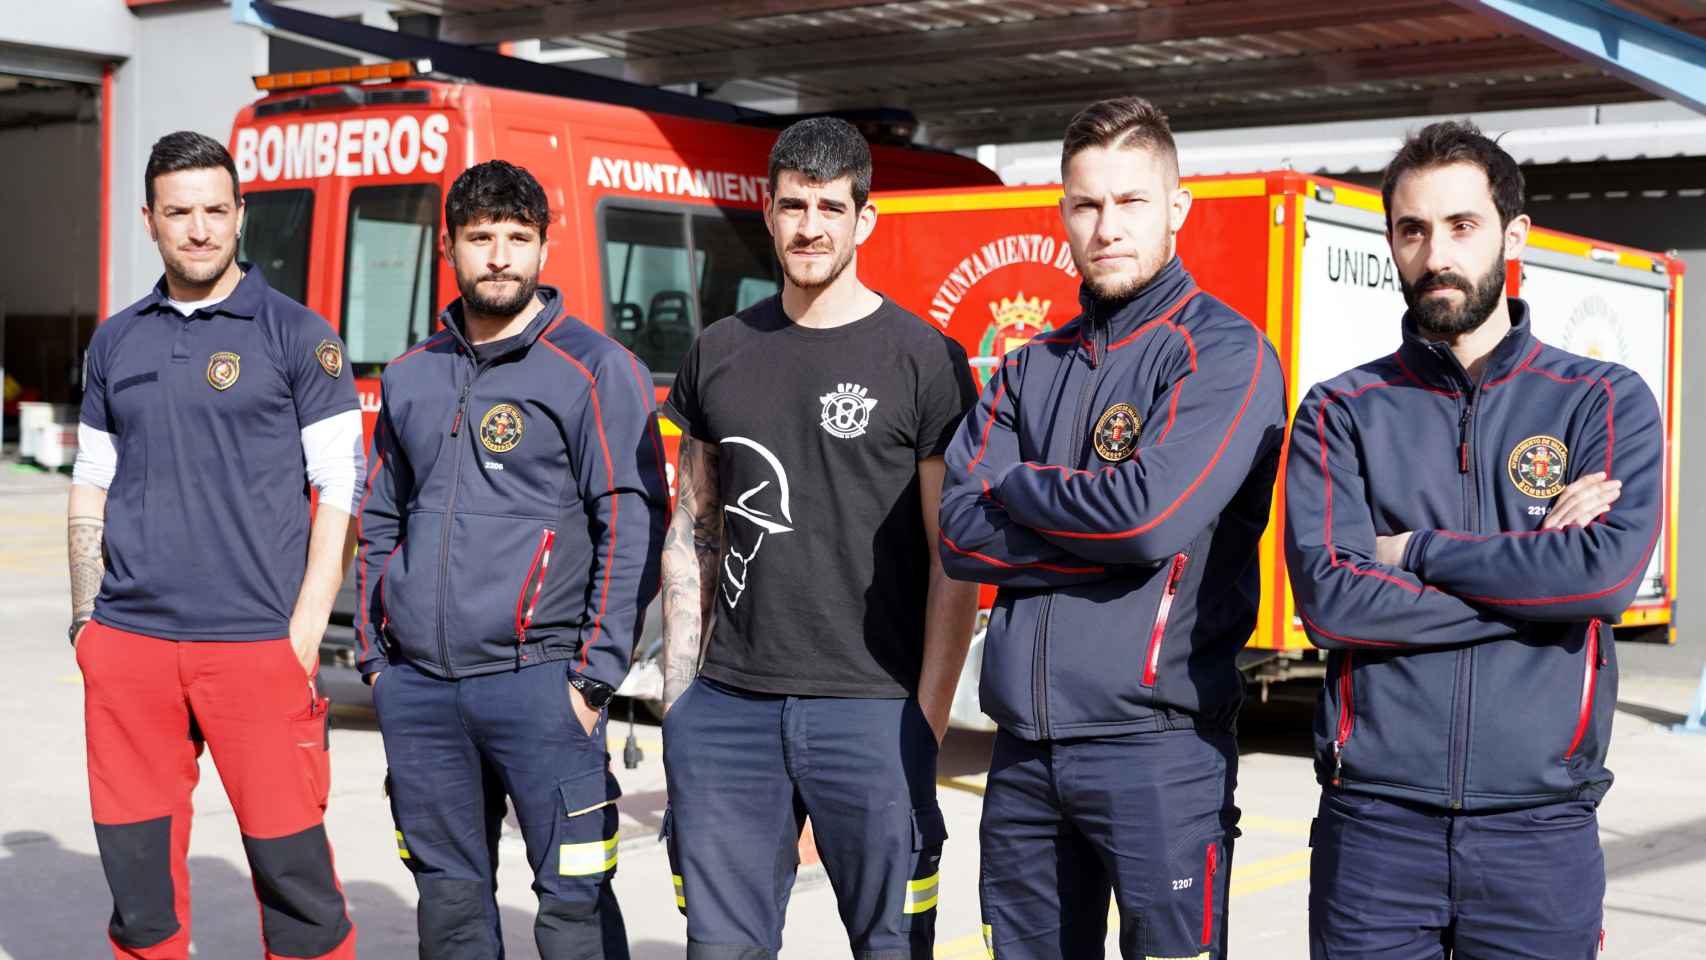 Los bomberos del Ayuntamiento de Valladolid que han acudido al terremoto de Turquía